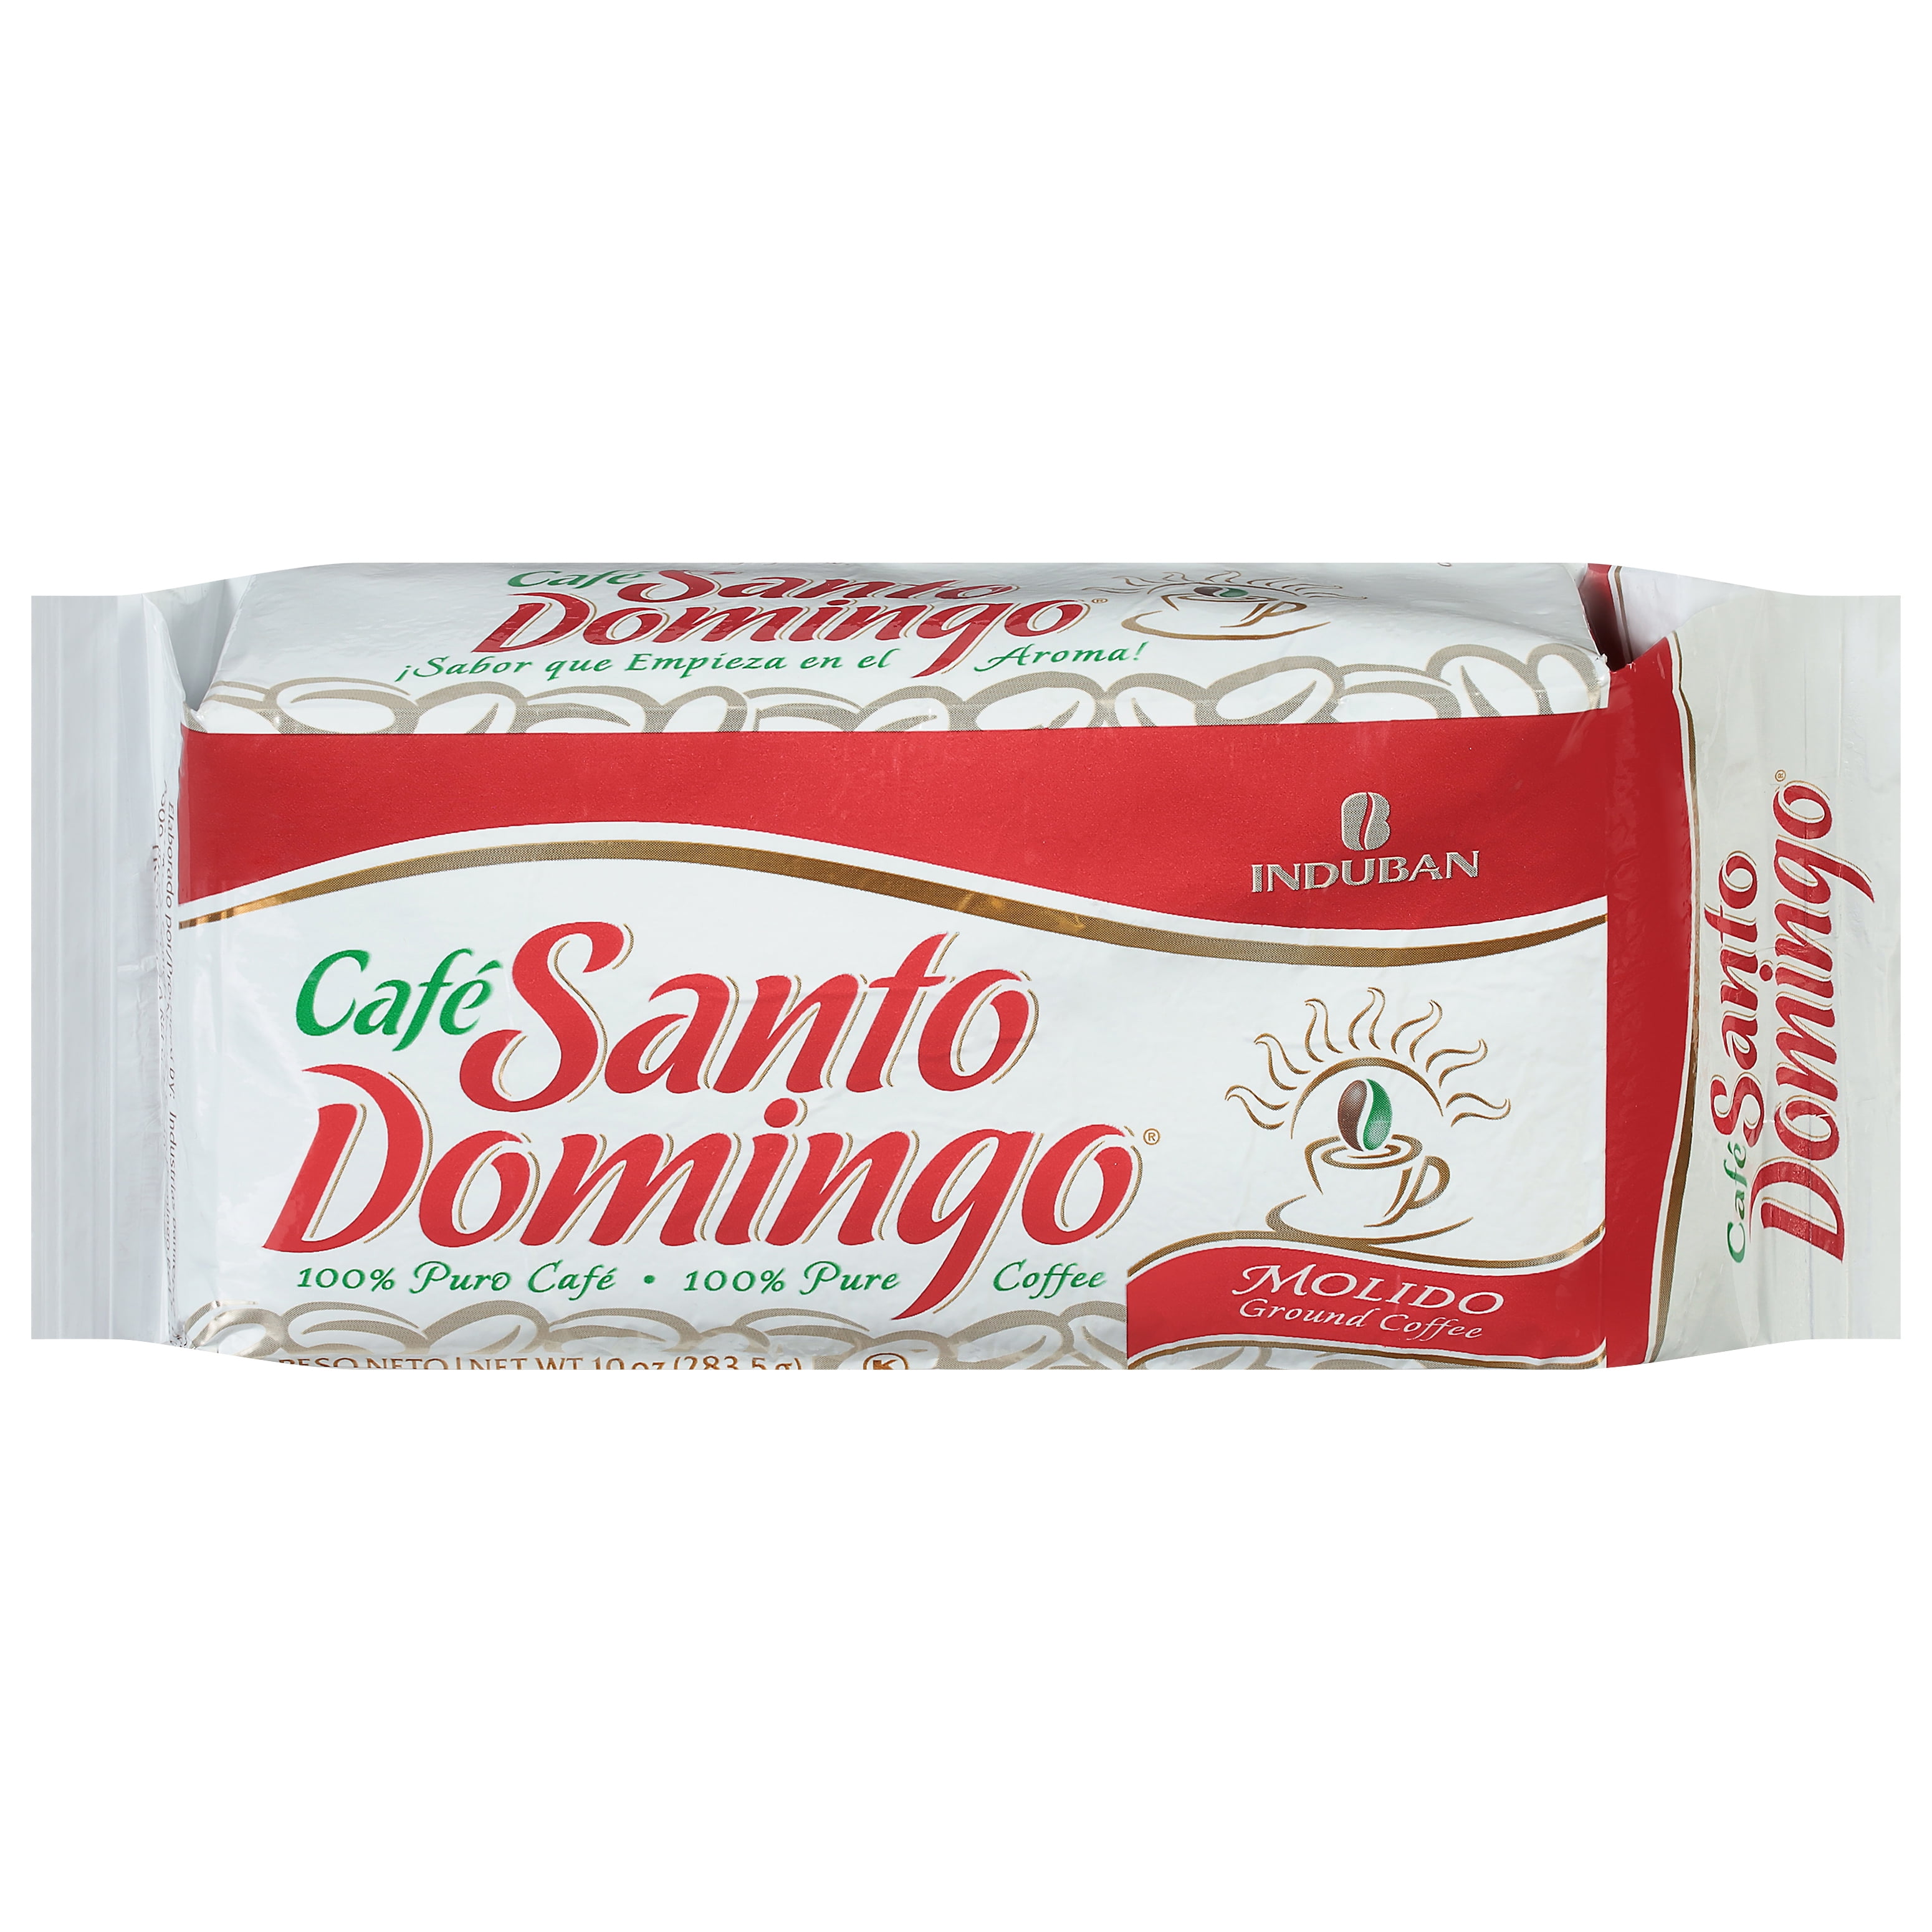 Café Santo Domingo - Coffee Time in Dominican Republic